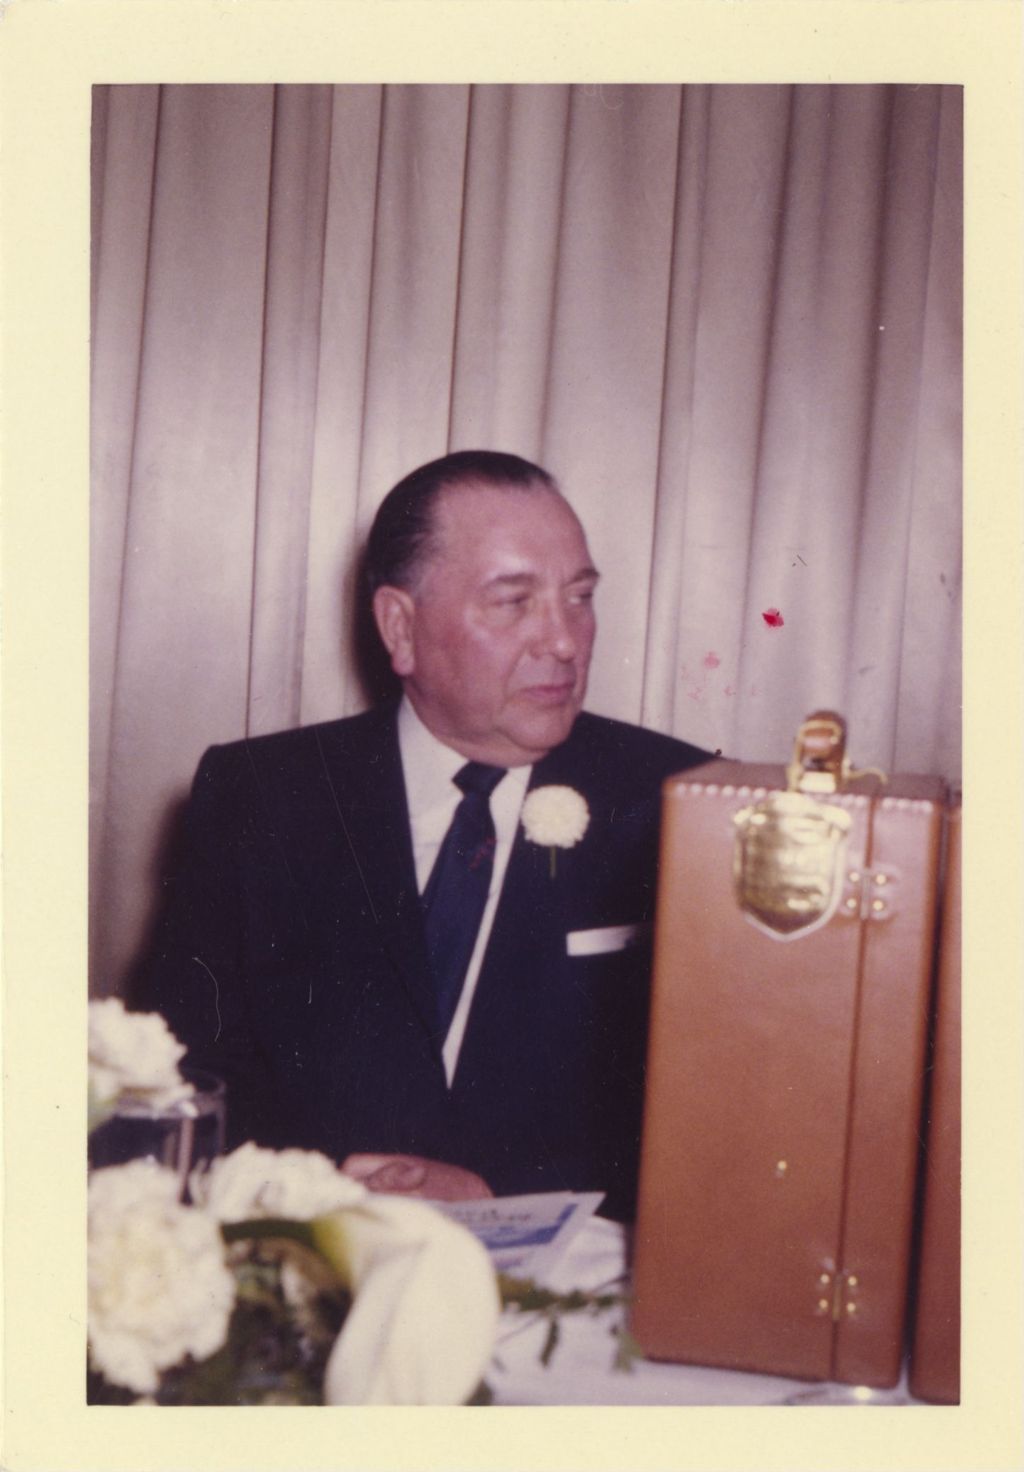 Miniature of Richard J. Daley at a banquet